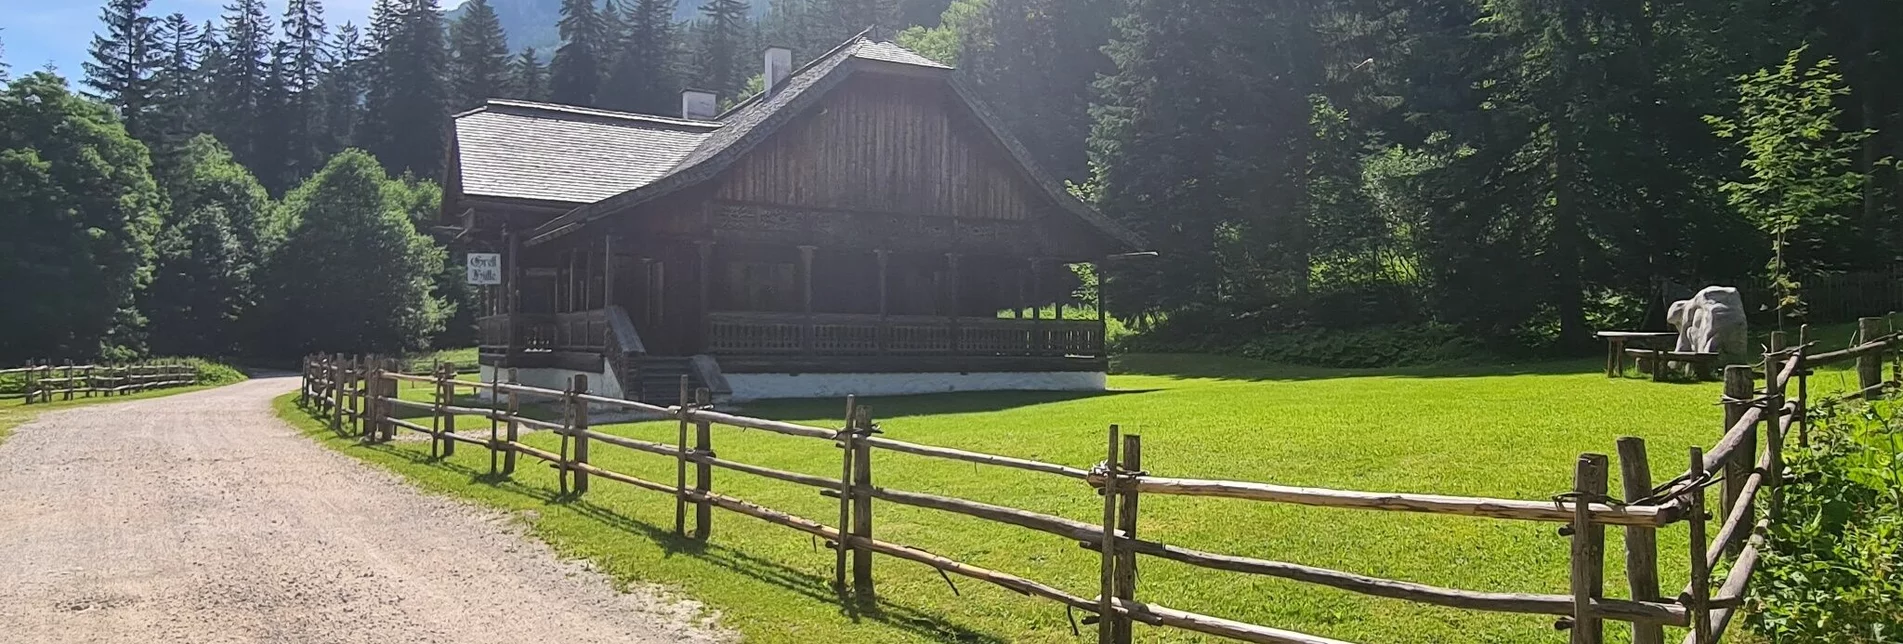 Wanderung Hüttenwanderung Gnanitztal - Touren-Impression #1 | © Erlebnisregion Schladming-Dachstein